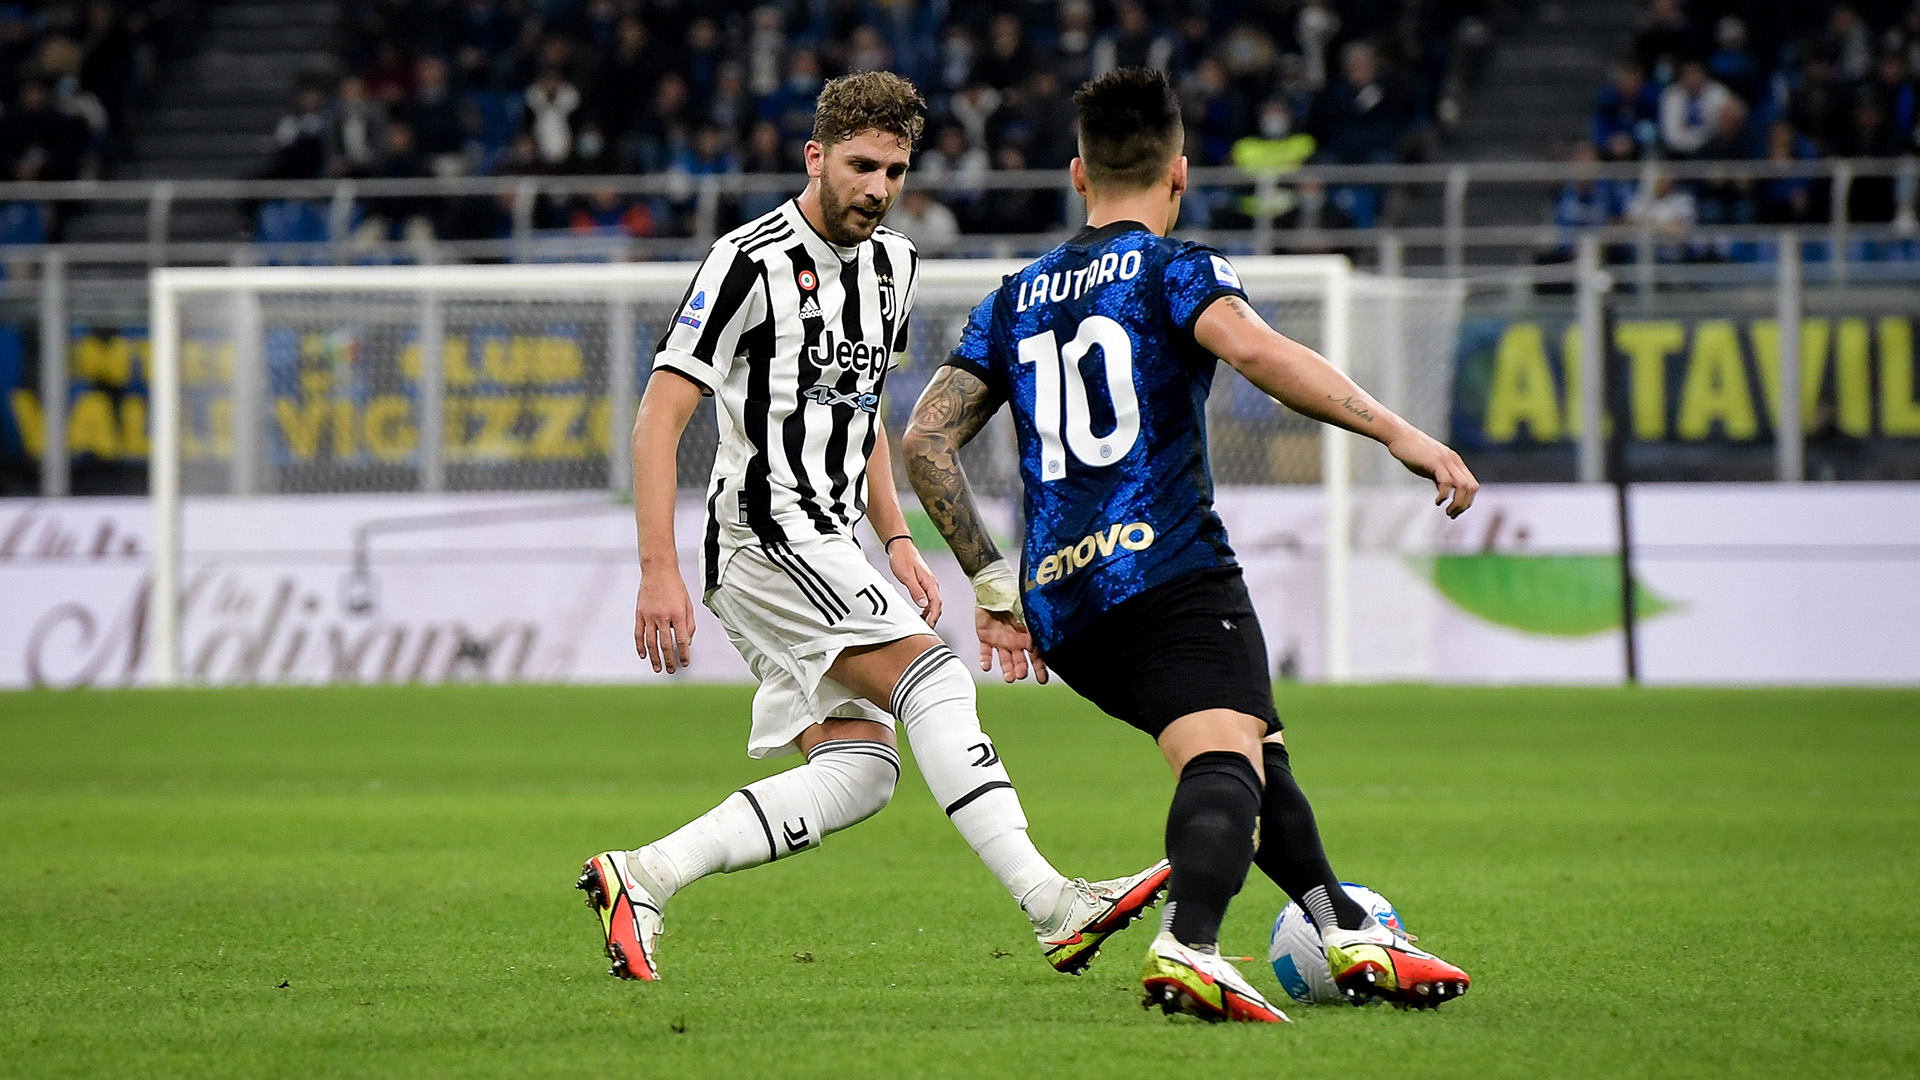 Si gioca Juventus-Inter: le curiosità sul Derby d'Italia in immagini